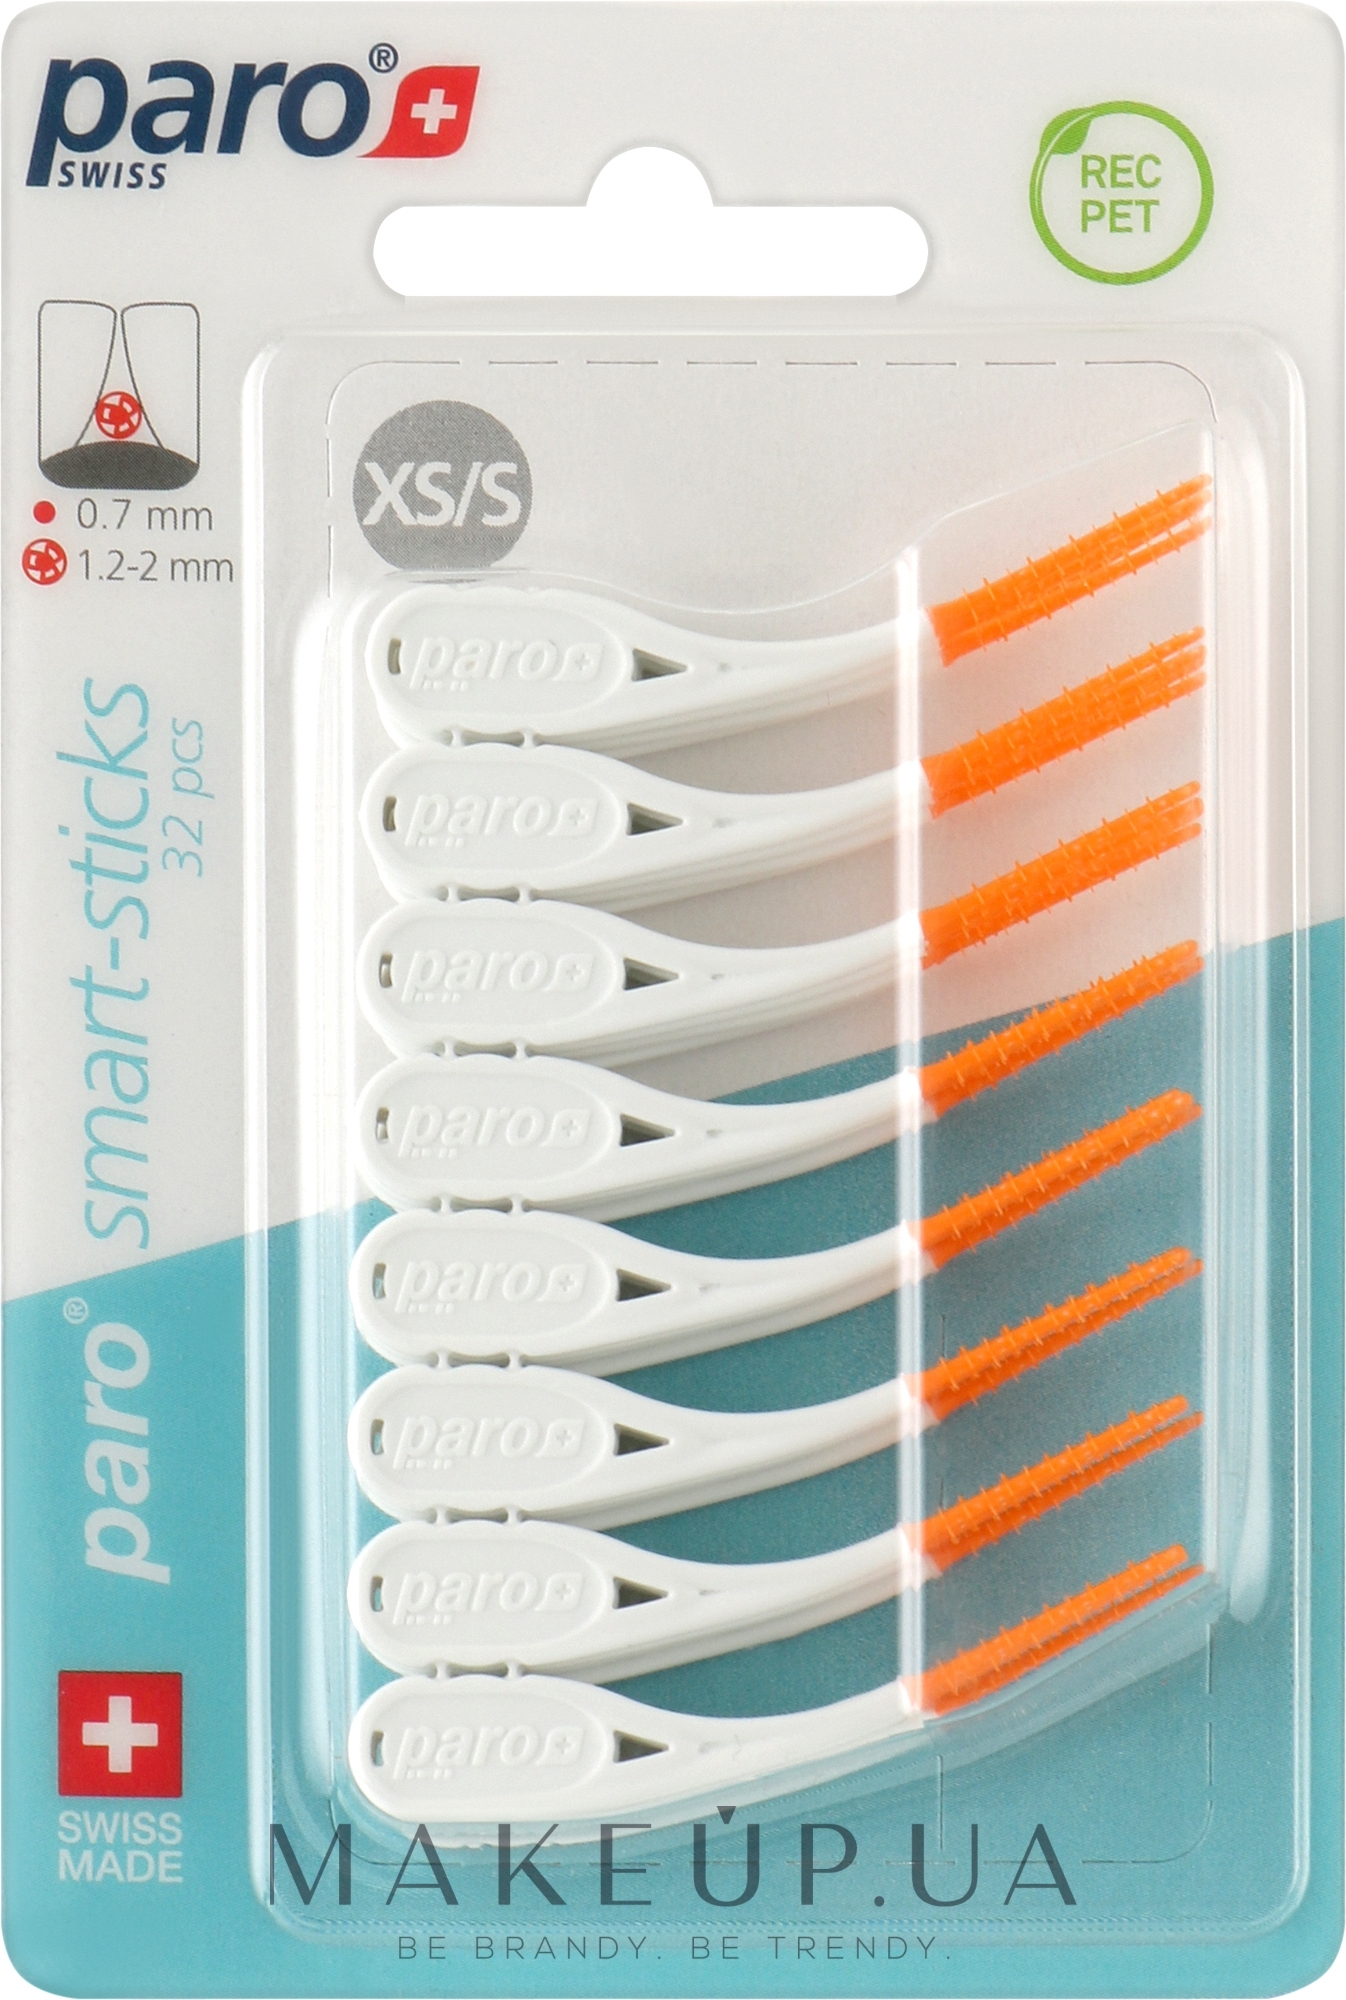 Безметалеві міжзубні щітки, розмір XS/S, 1.2/2 мм, помаранчеві - Paro Swiss Smart-Sticks — фото 32шт